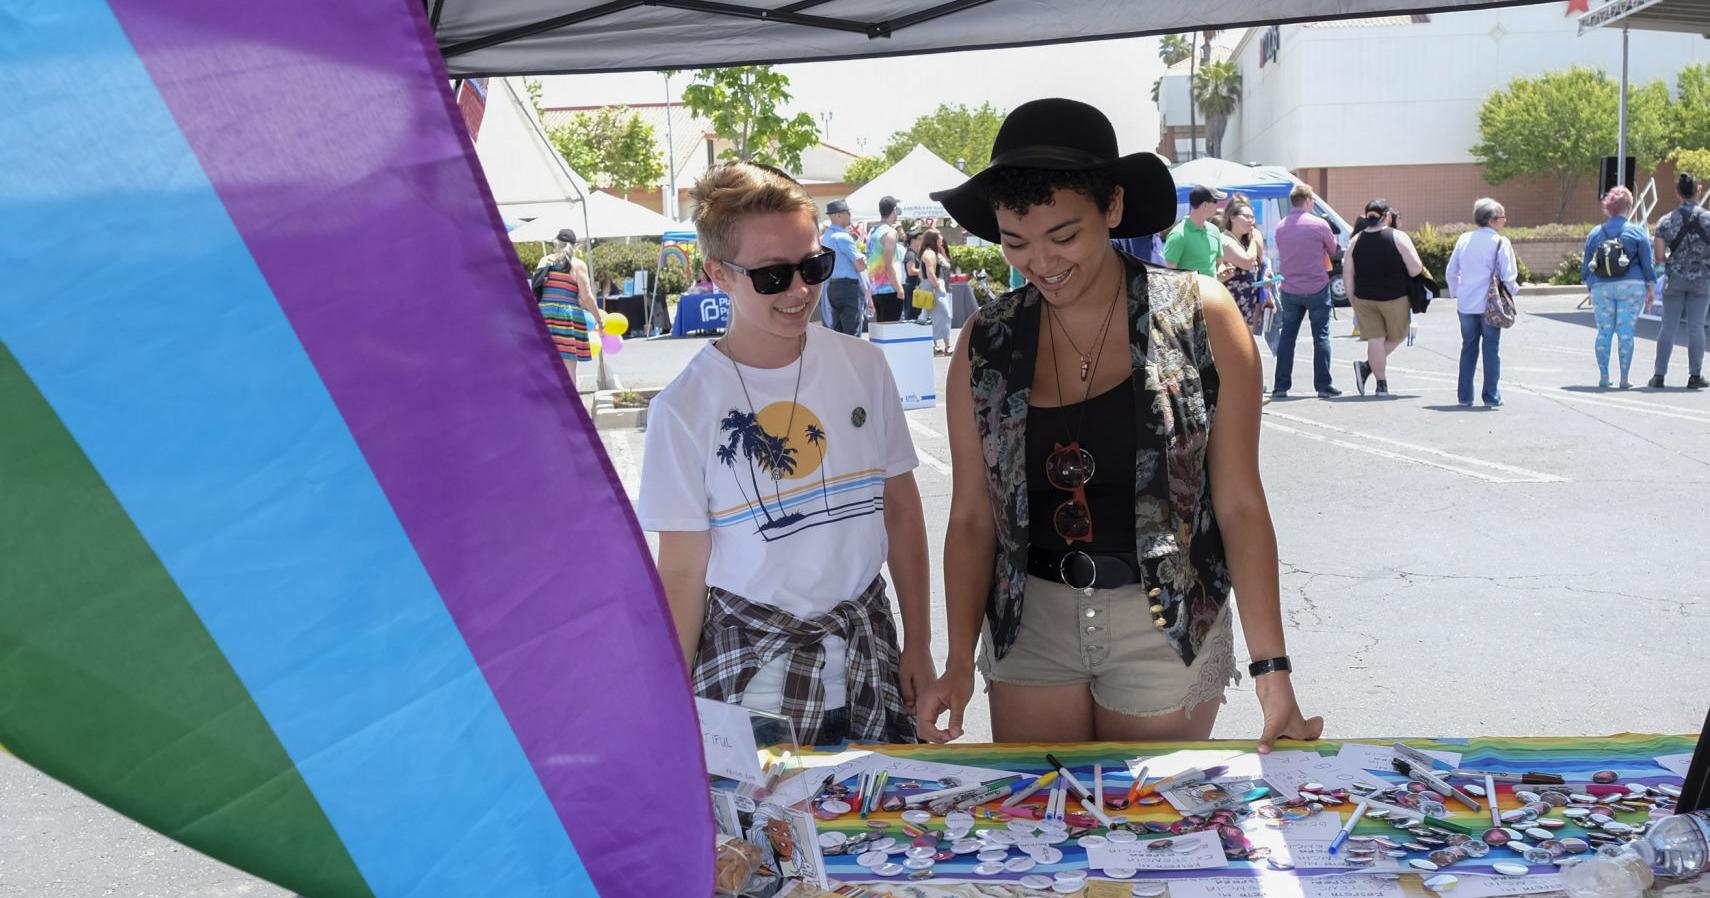 Santa Maria Pride festival headed to fair park this weekend